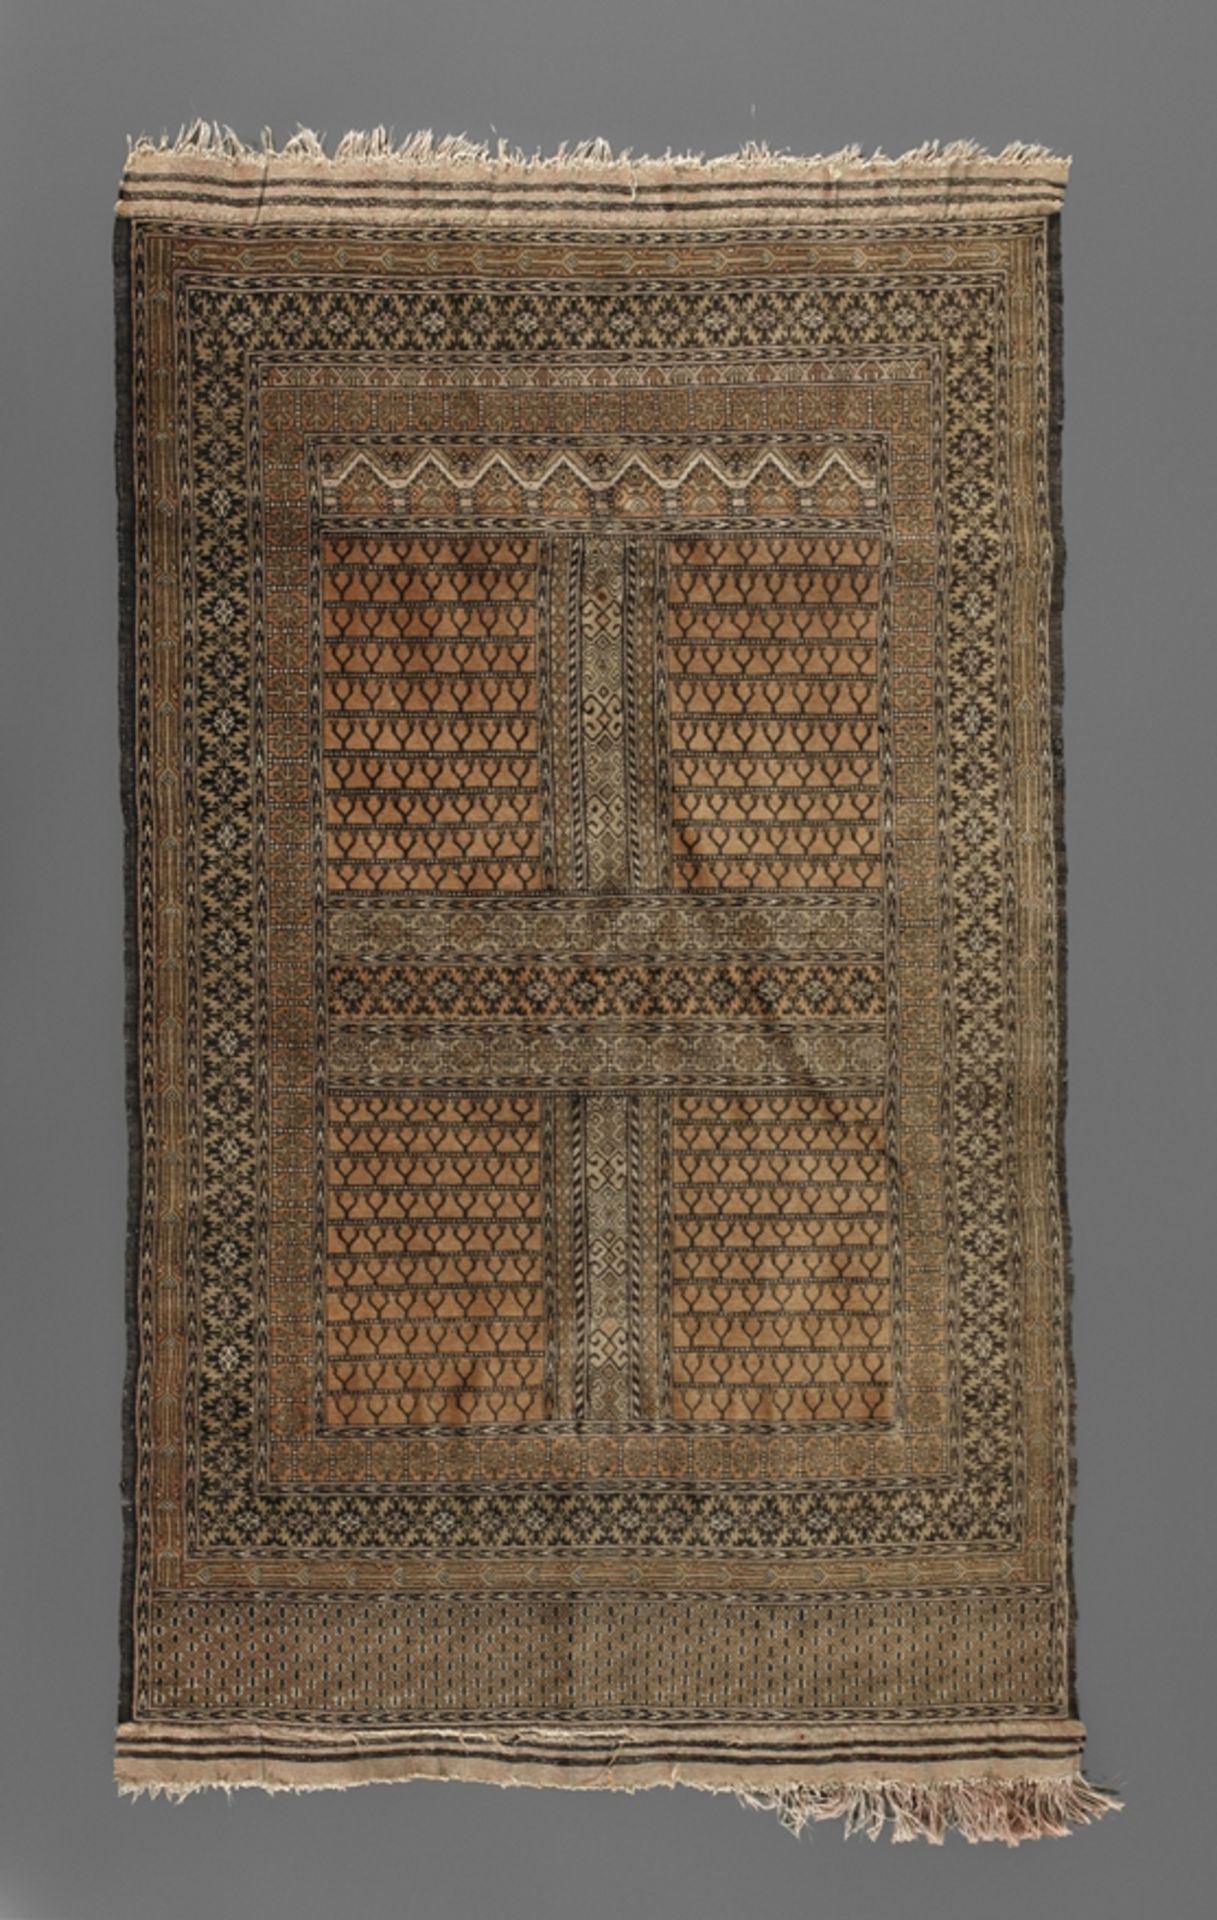 Bukhara2. Hälfte 20. Jh., in hellen Erdtönen gearbeitetes Modell mit sehr kleinteiligem Dekor,